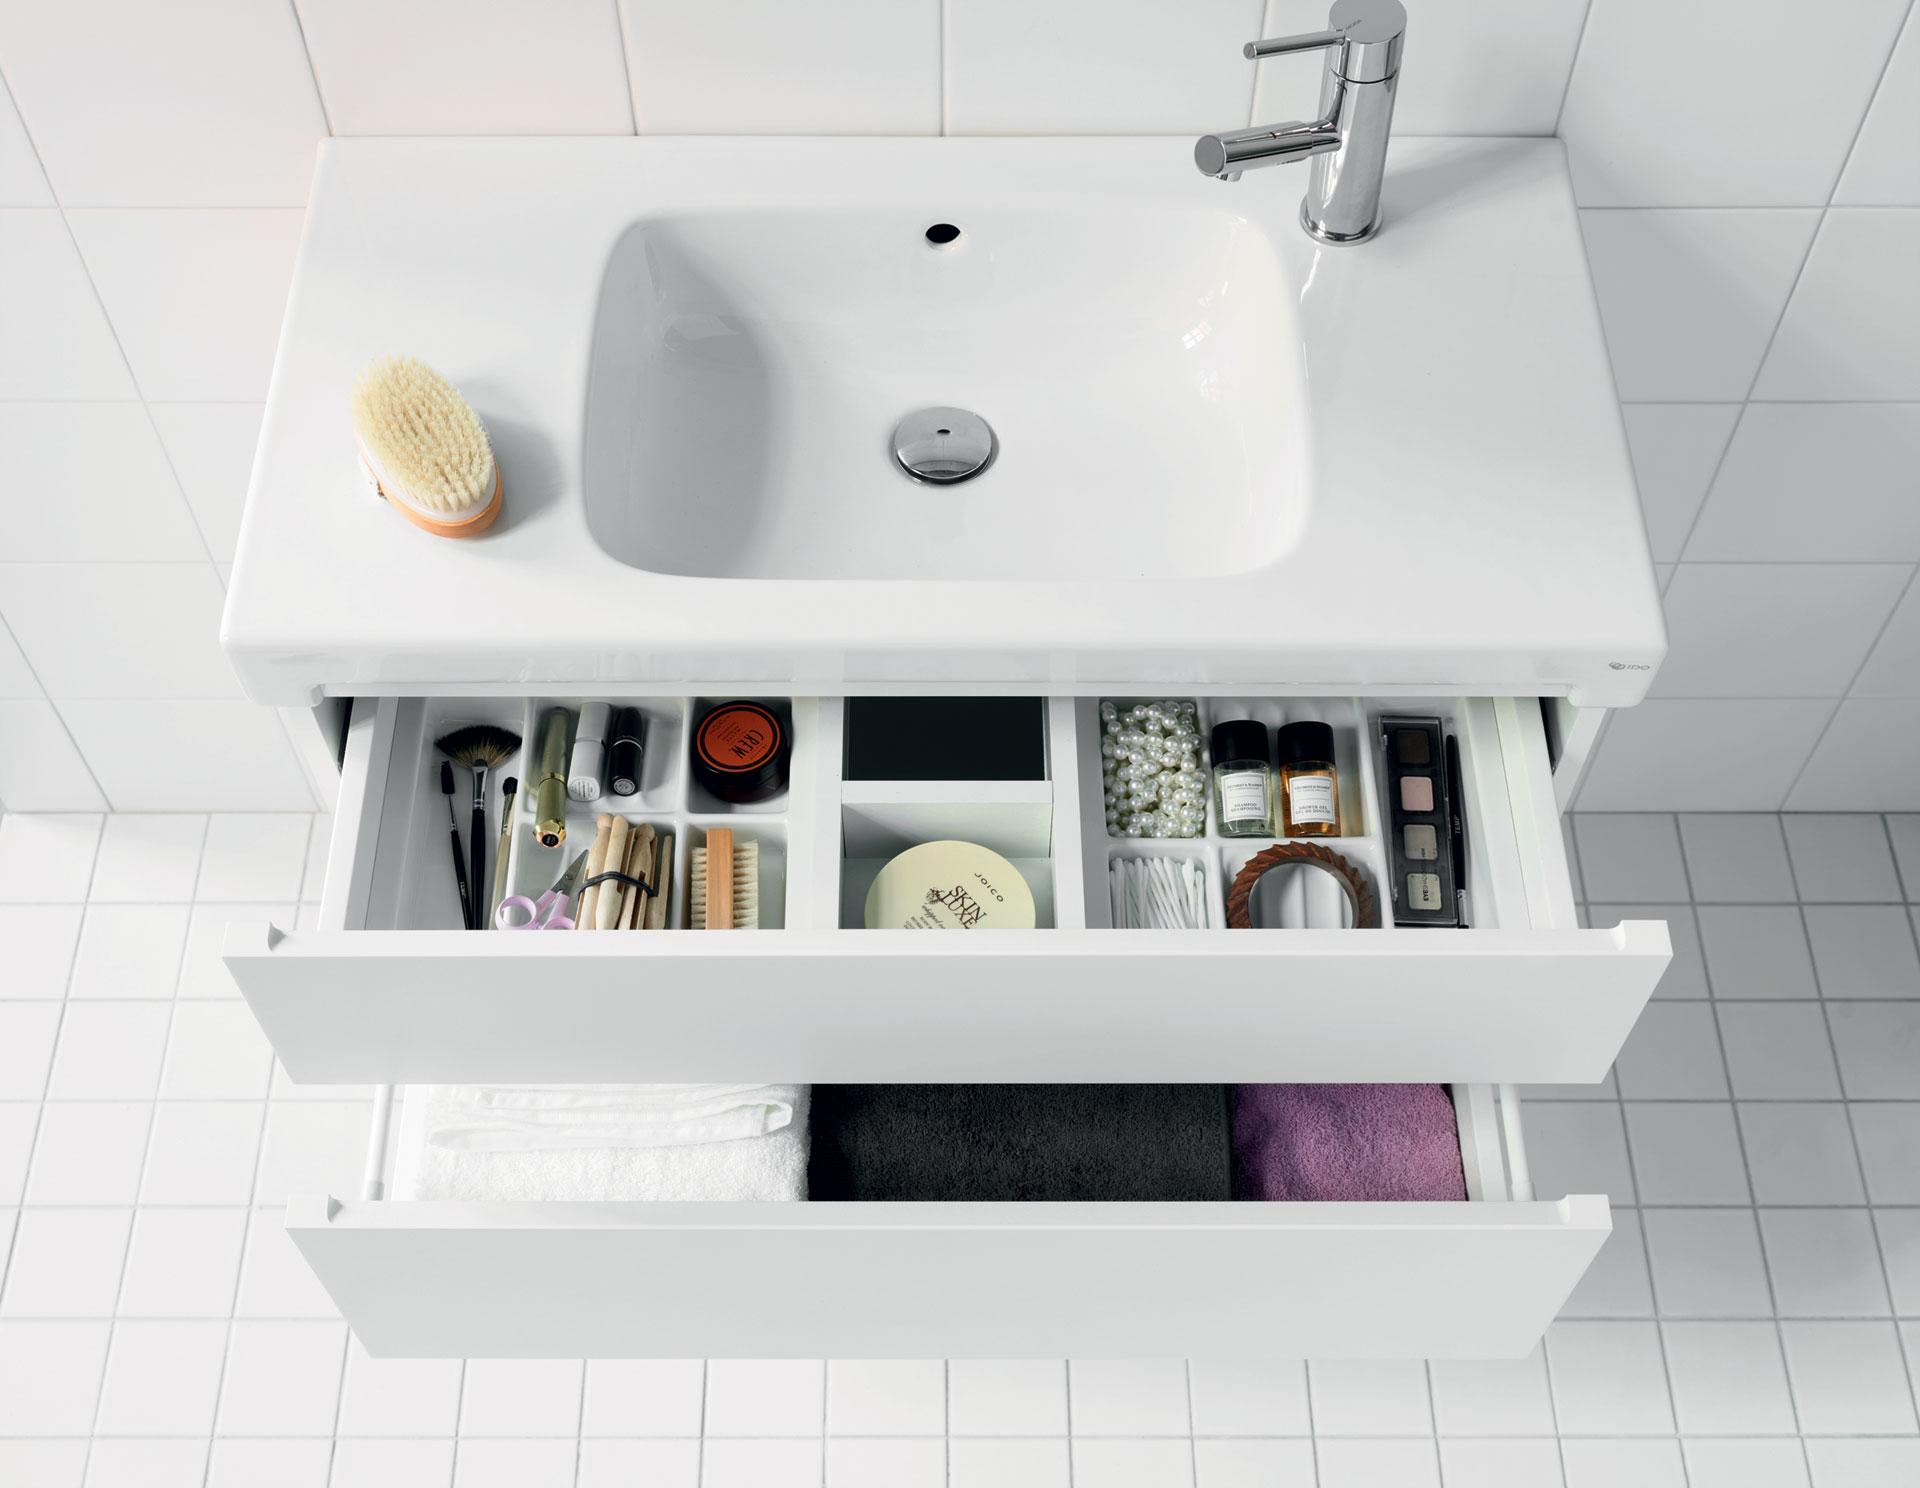 IDOn kylpyhuonekalusteissa lokerikot pitävät tavarat järjestyksessä helposti painamalla avattavissa laatikoissa.